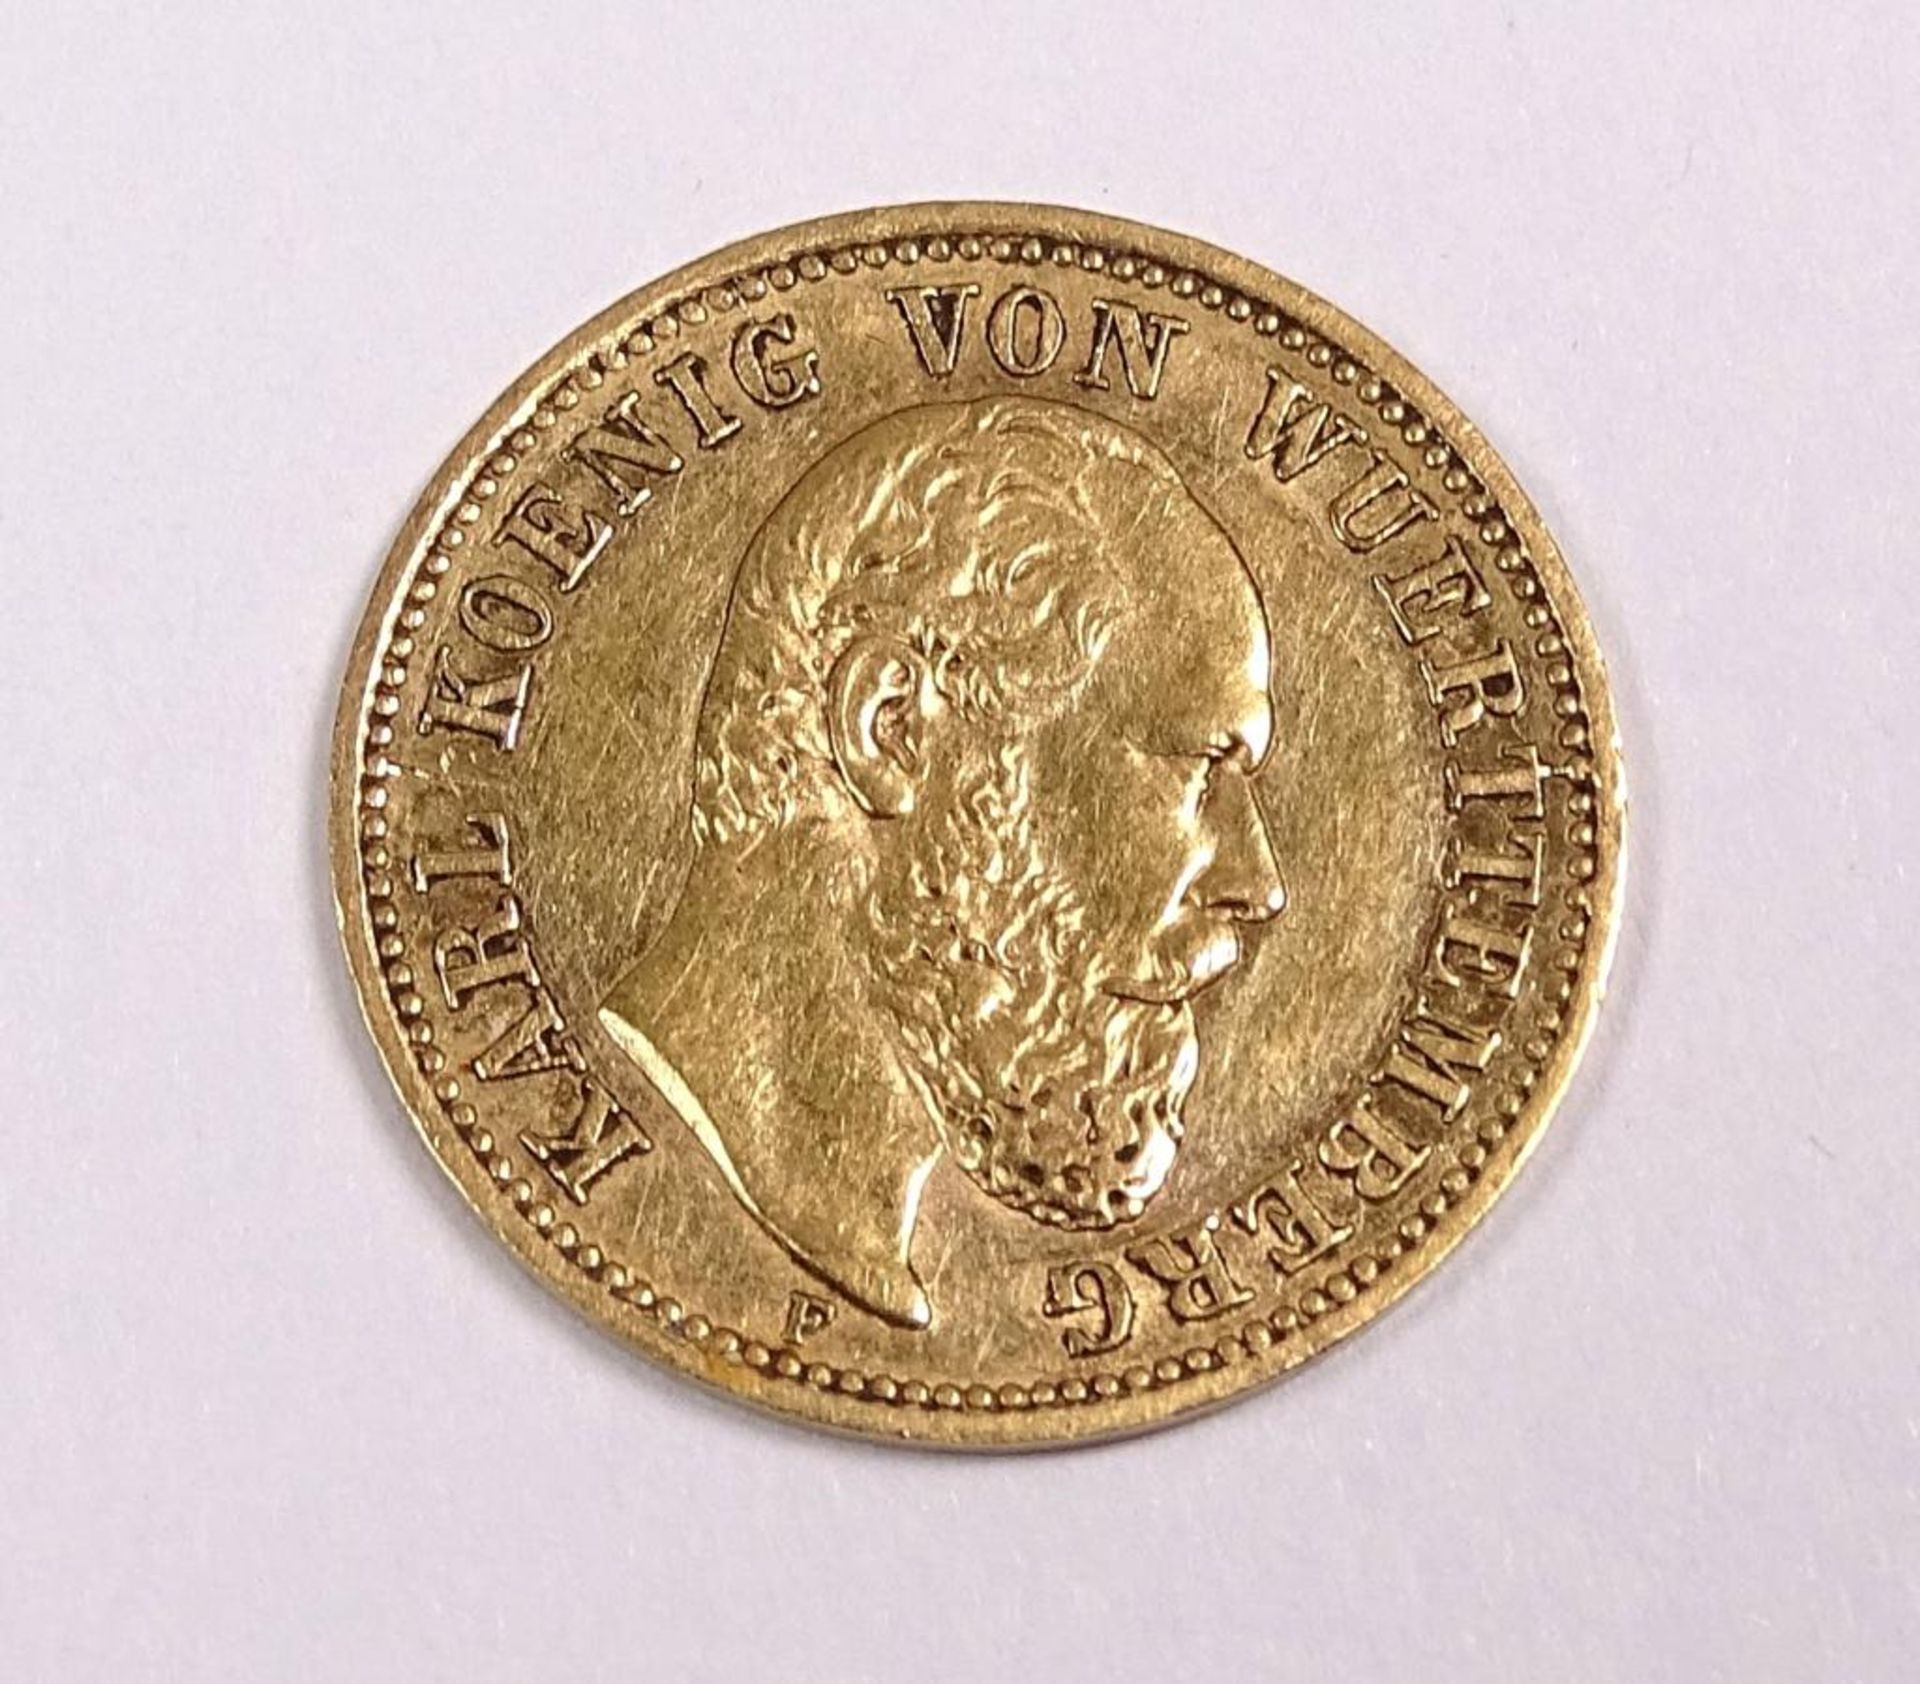 Selten! Goldmünze : 5 Mark 1877 F , Karl König v. Wuerttemberg,Deutsches Reich, 900/000, d-17mm, 1,